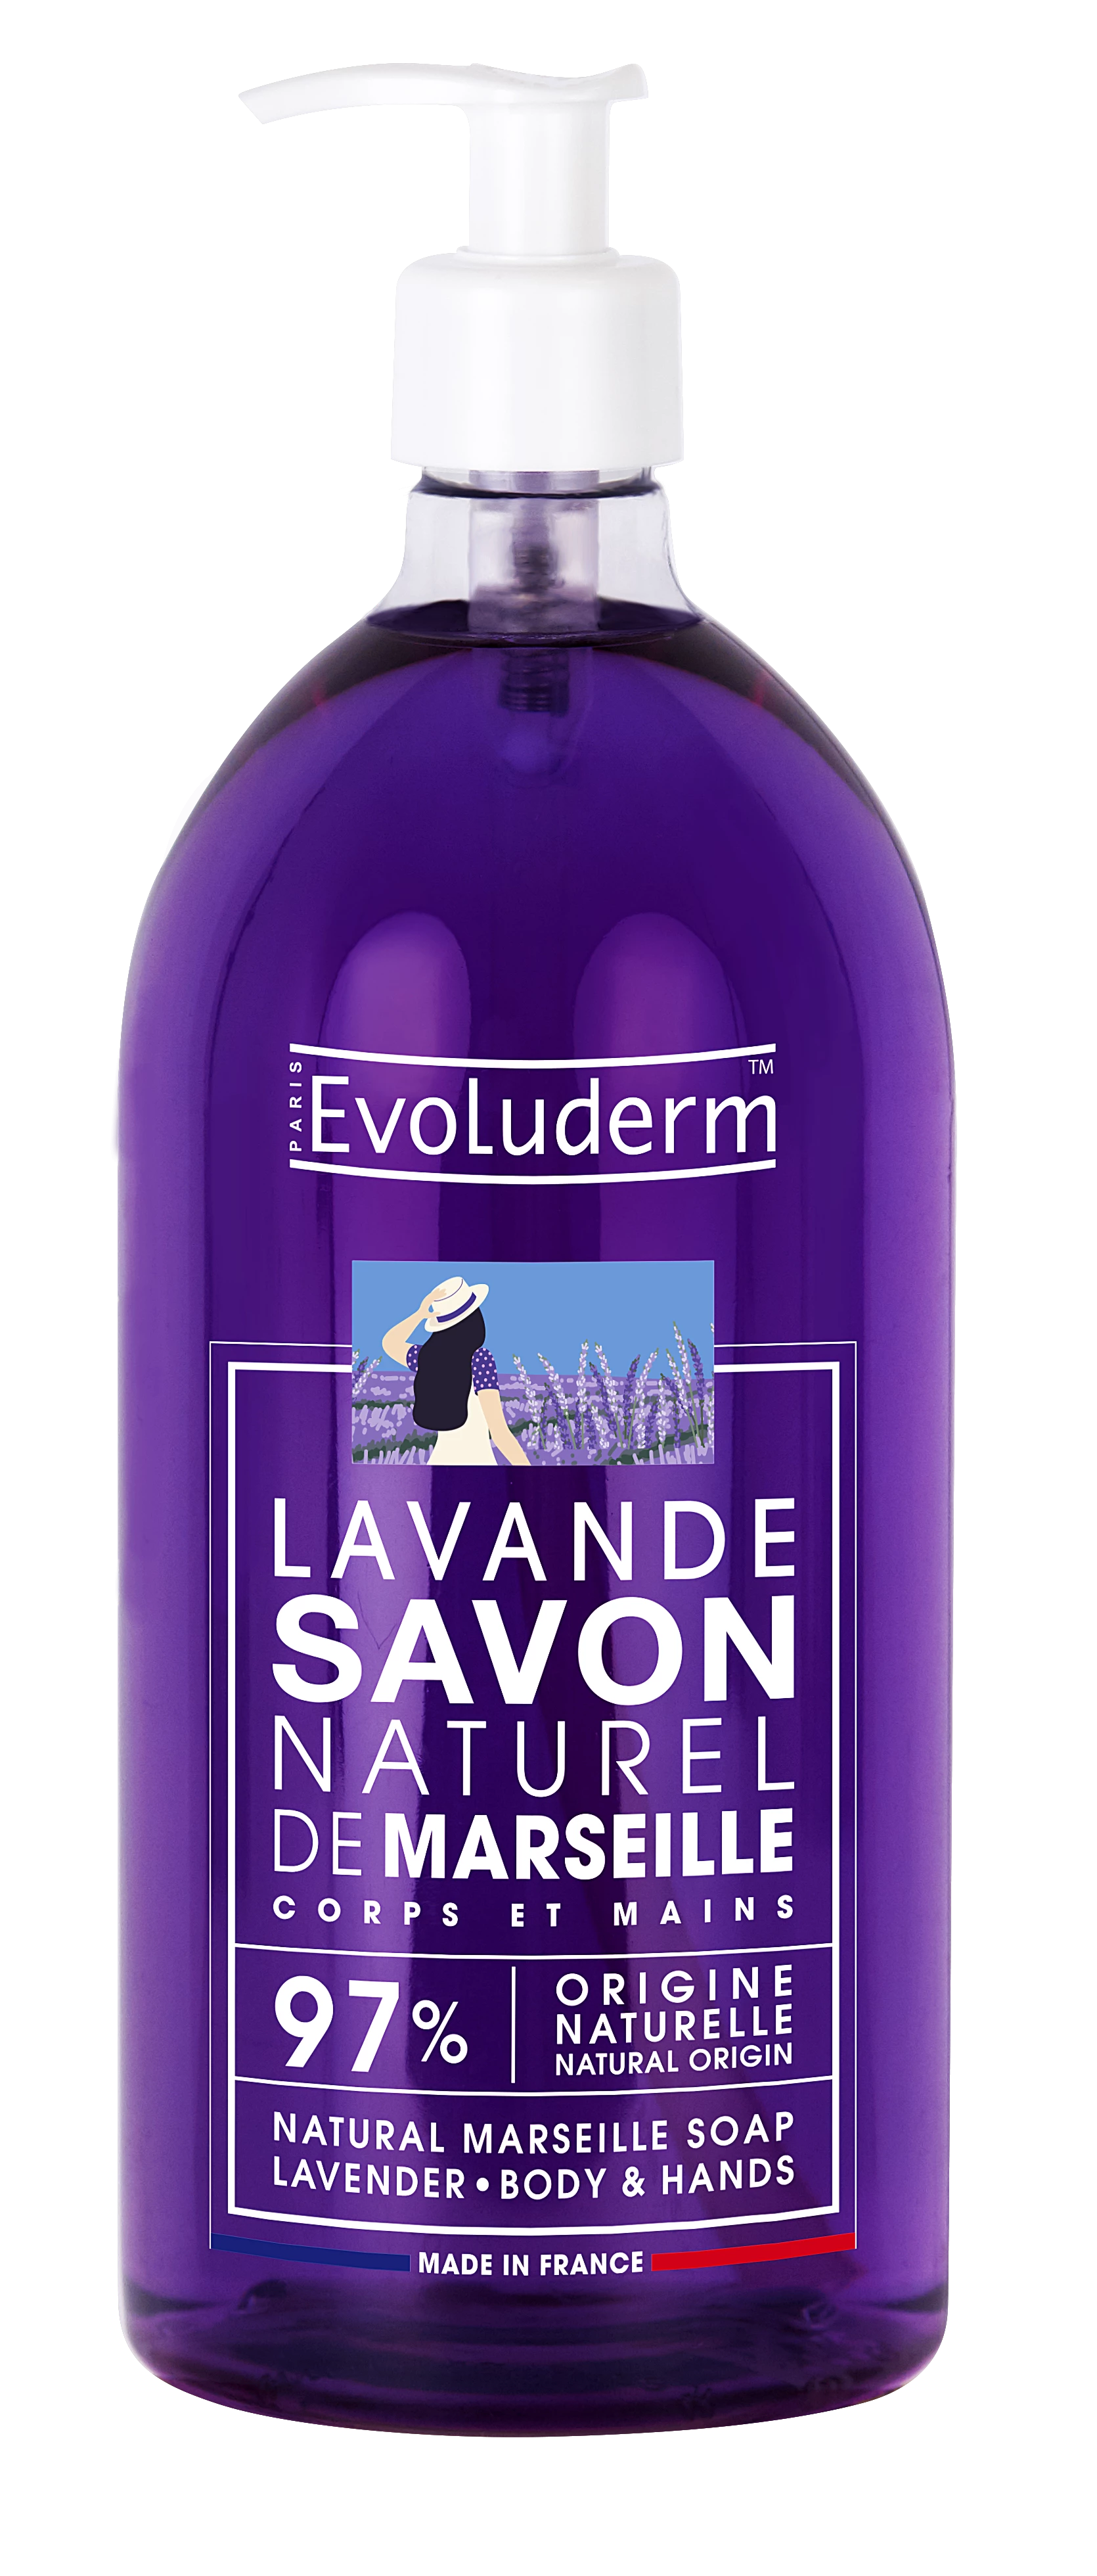 Lavendel natuurlijke vloeibare Marseillezeep, 1L - EVOLUDERM